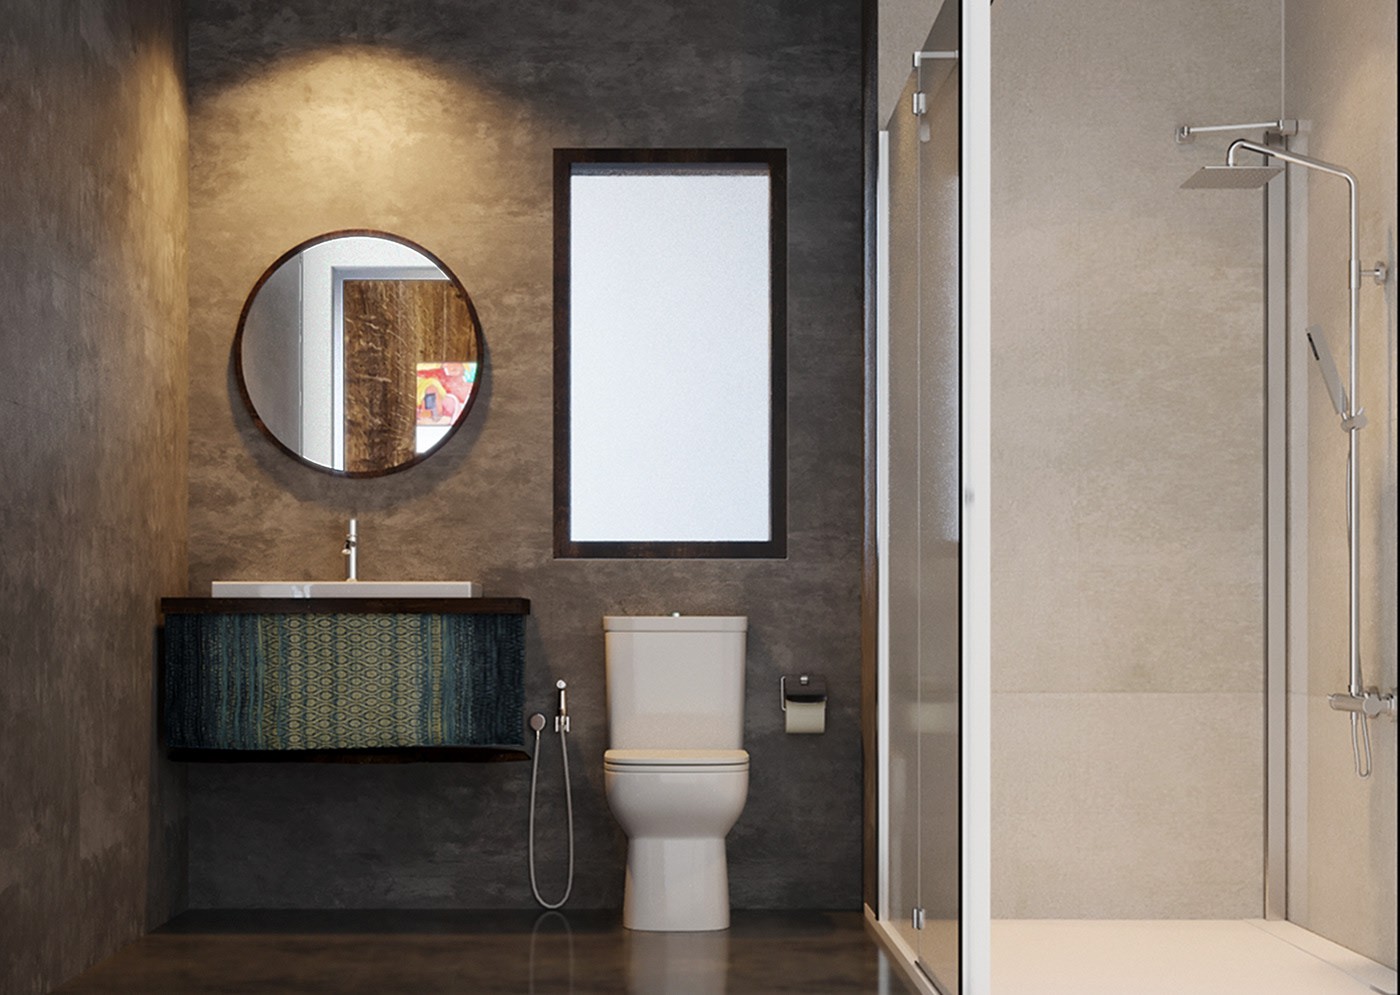 Hình ảnh phòng tắm với hai khu tắm đứng, vệ sinh riêng biệt, phân tách bởi màu tường xám và vách kính trong suốt